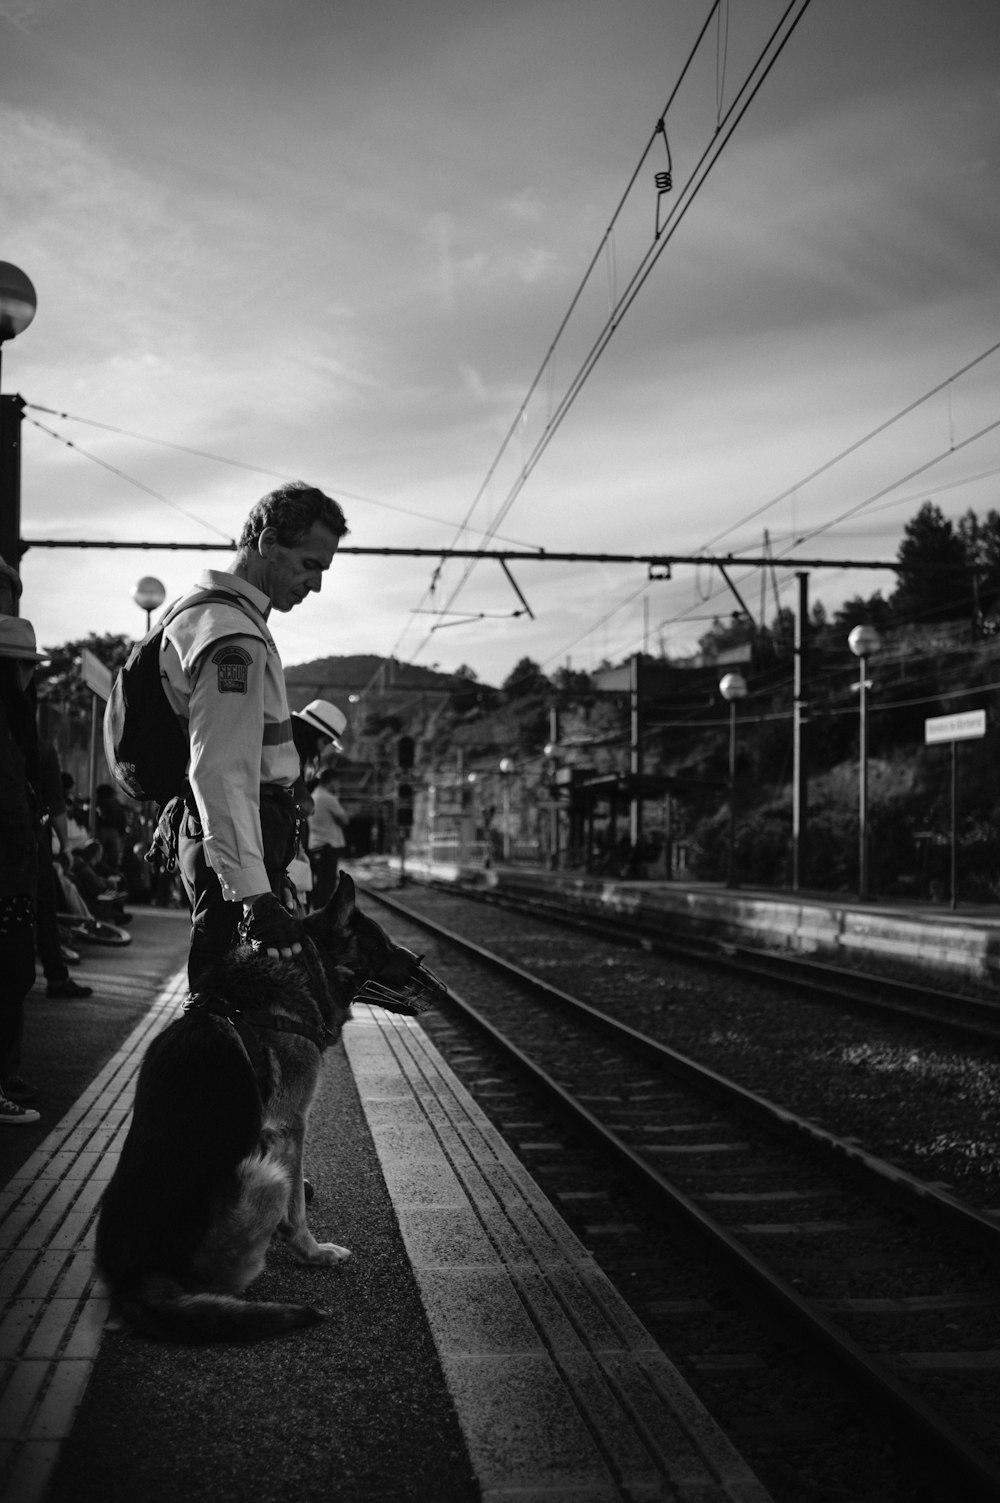 白い長袖シャツと黒いズボンの男が電車のレールの上を歩いているグレースケールの写真